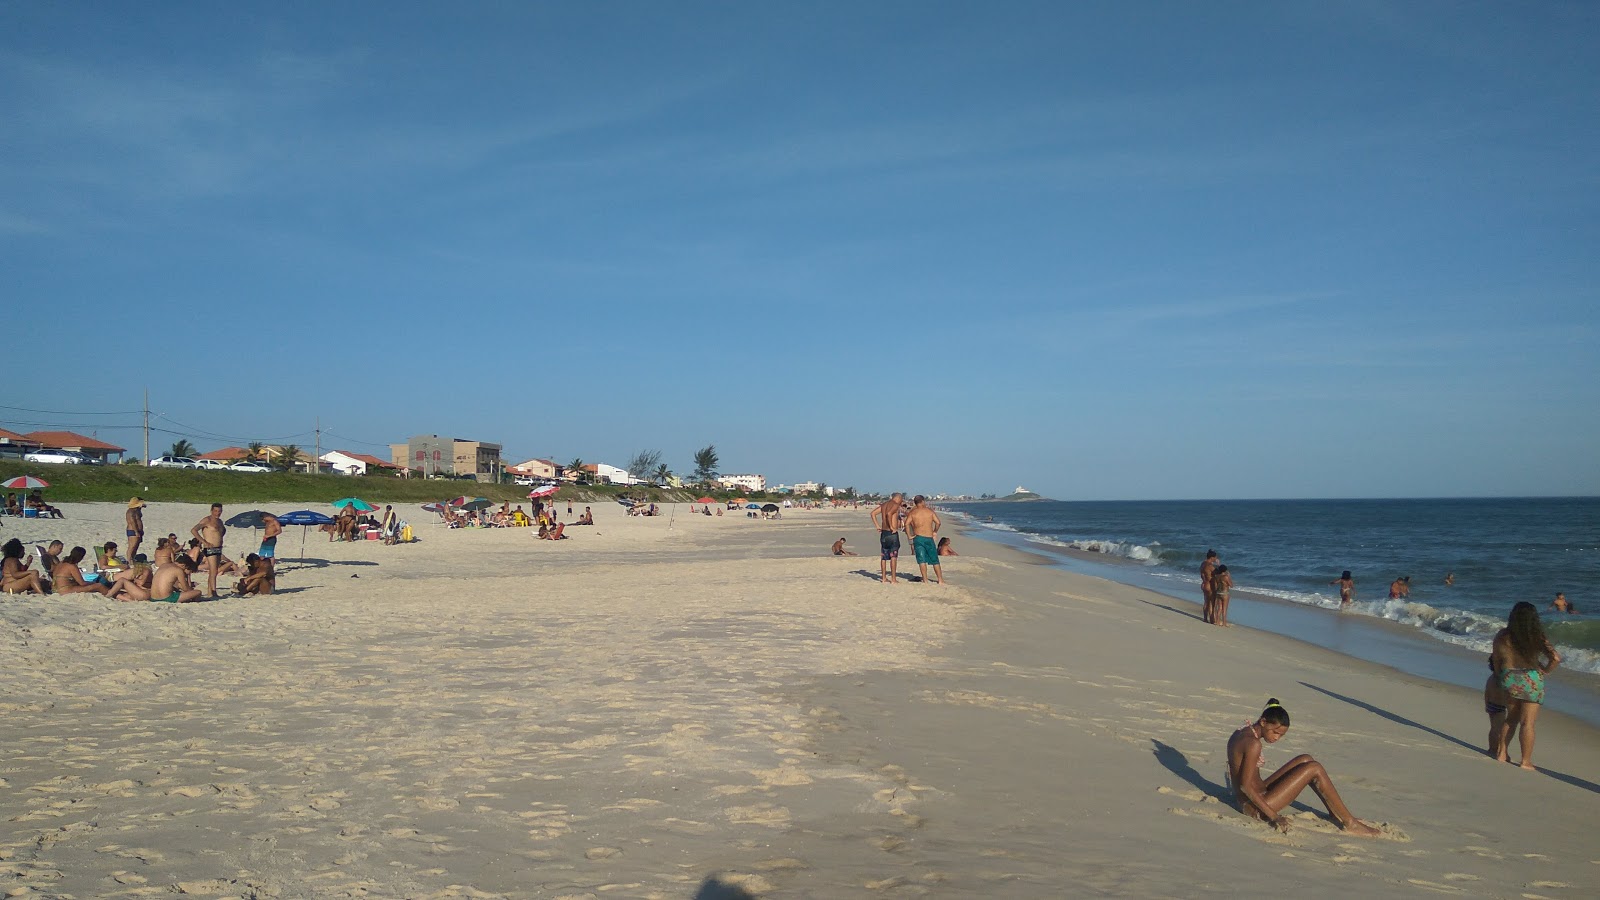 Praia do Boqueirao'in fotoğrafı parlak ince kum yüzey ile